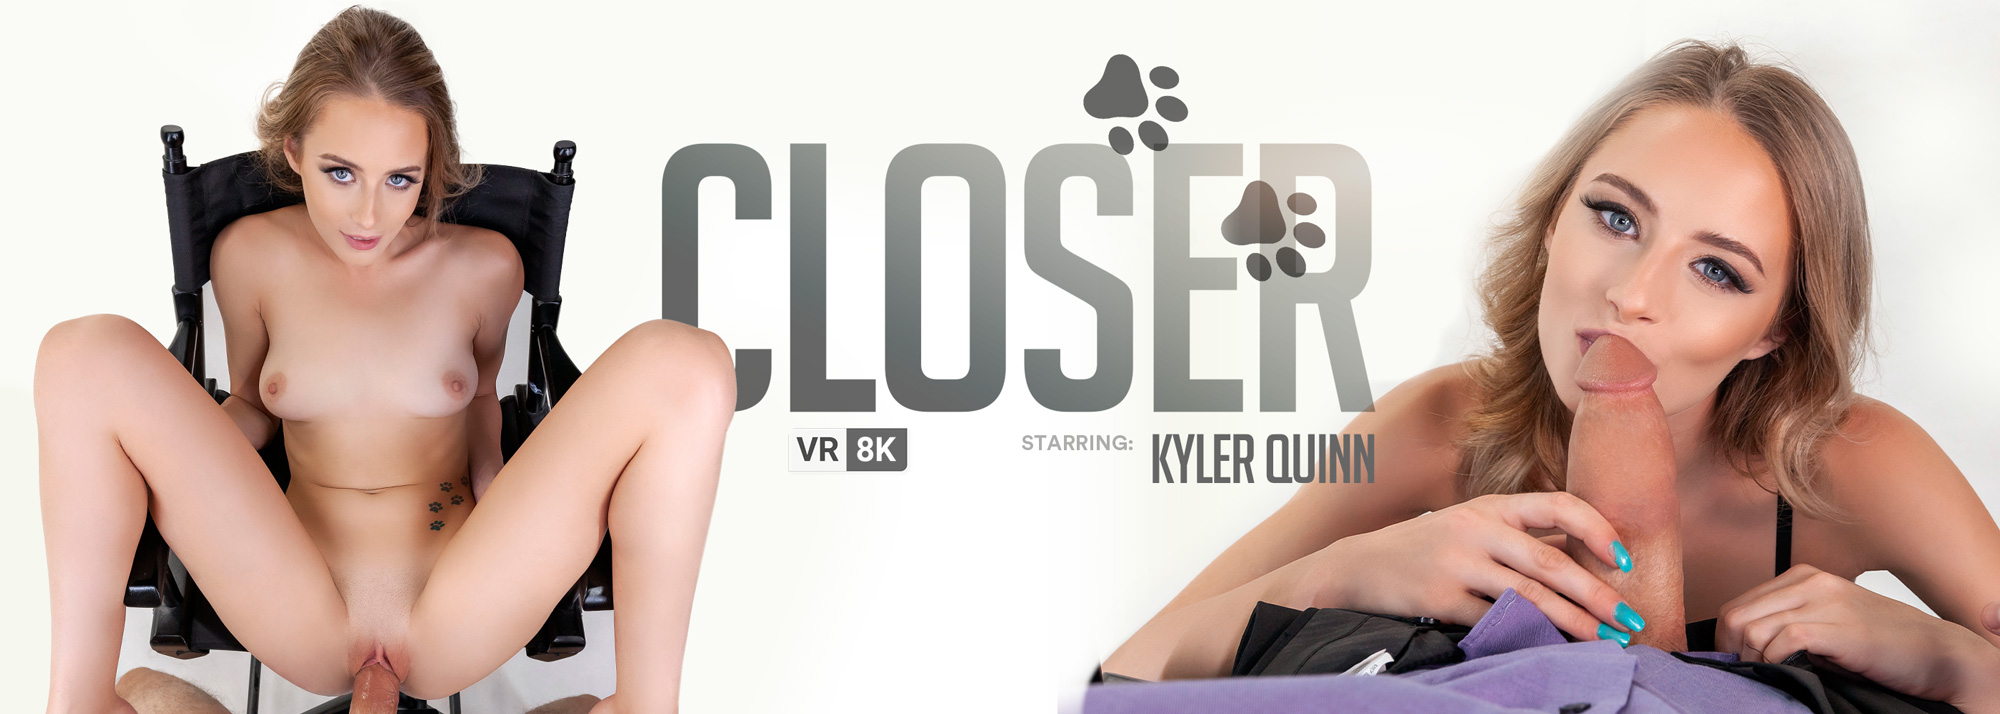 Closer with Kyler Quinn  Slideshow